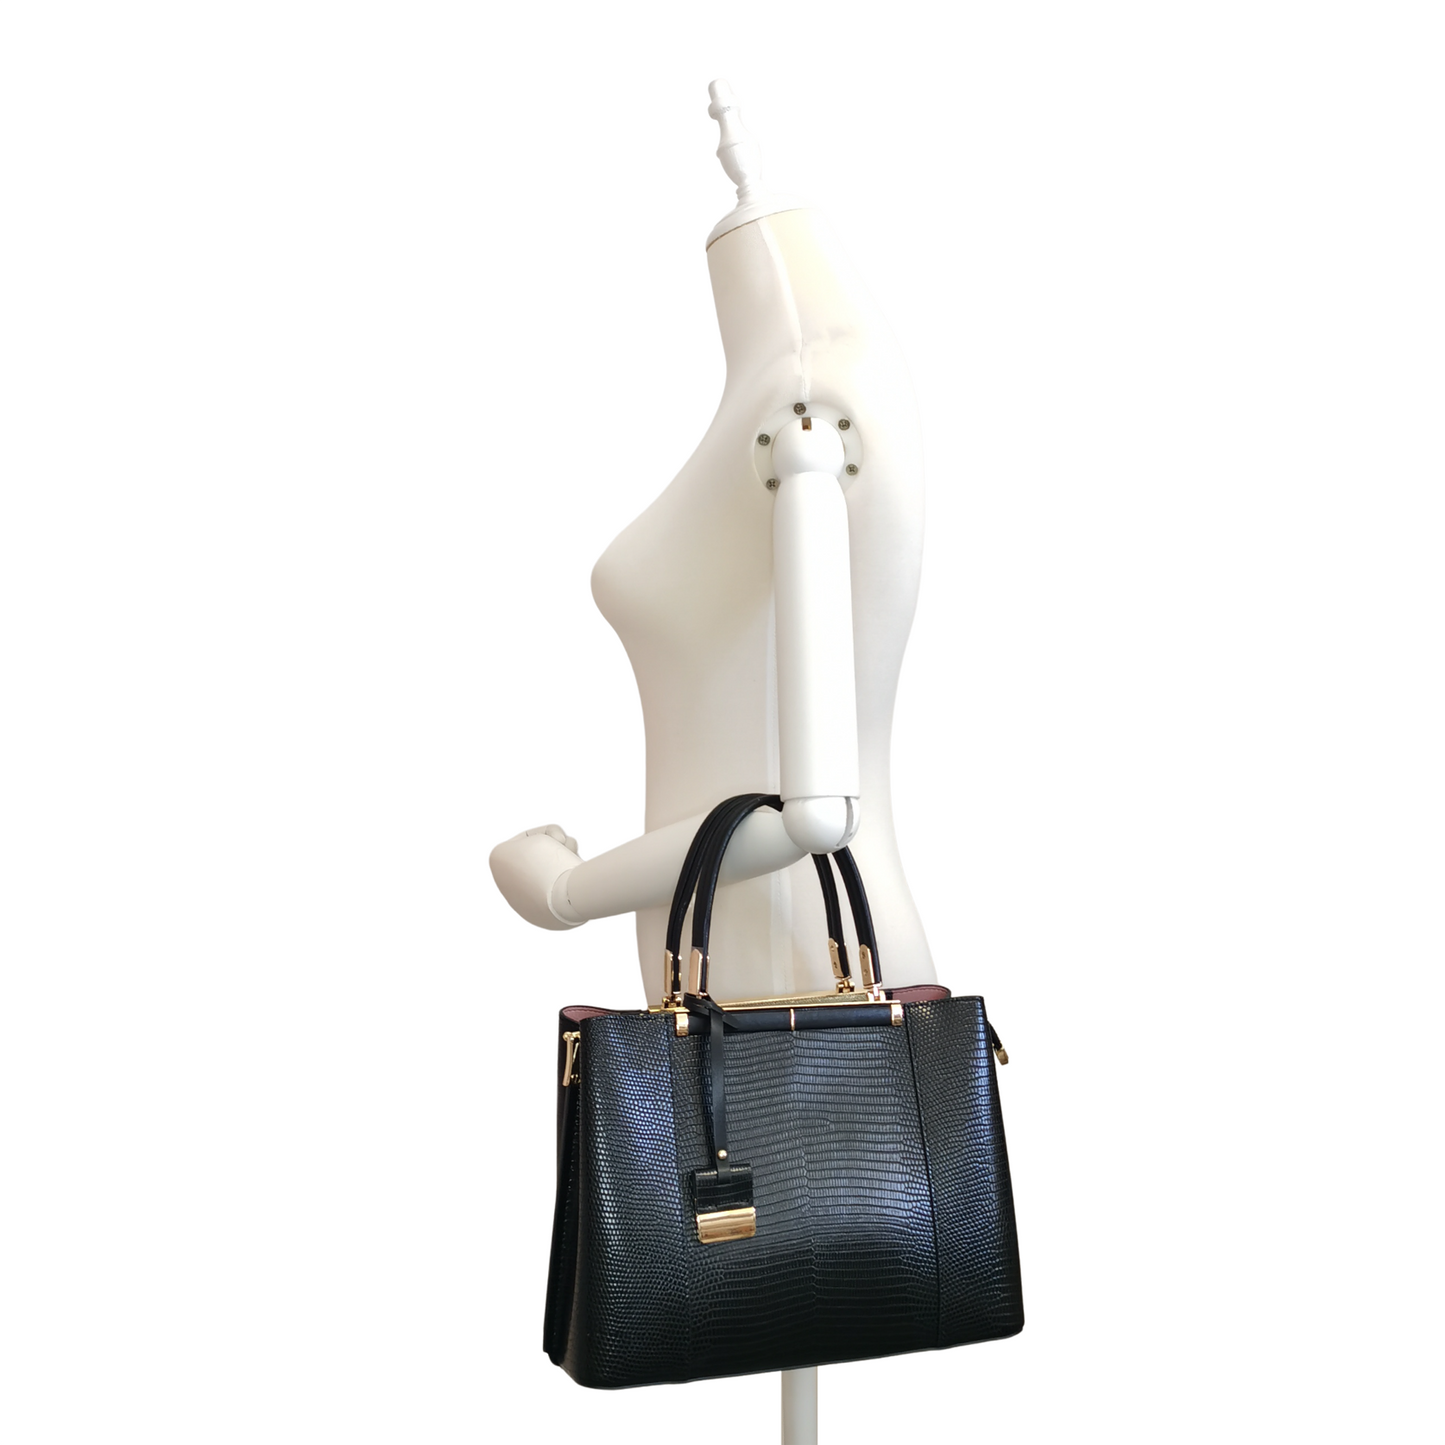 Women's genuine cowhide leather handbag Kunis design in lizard print